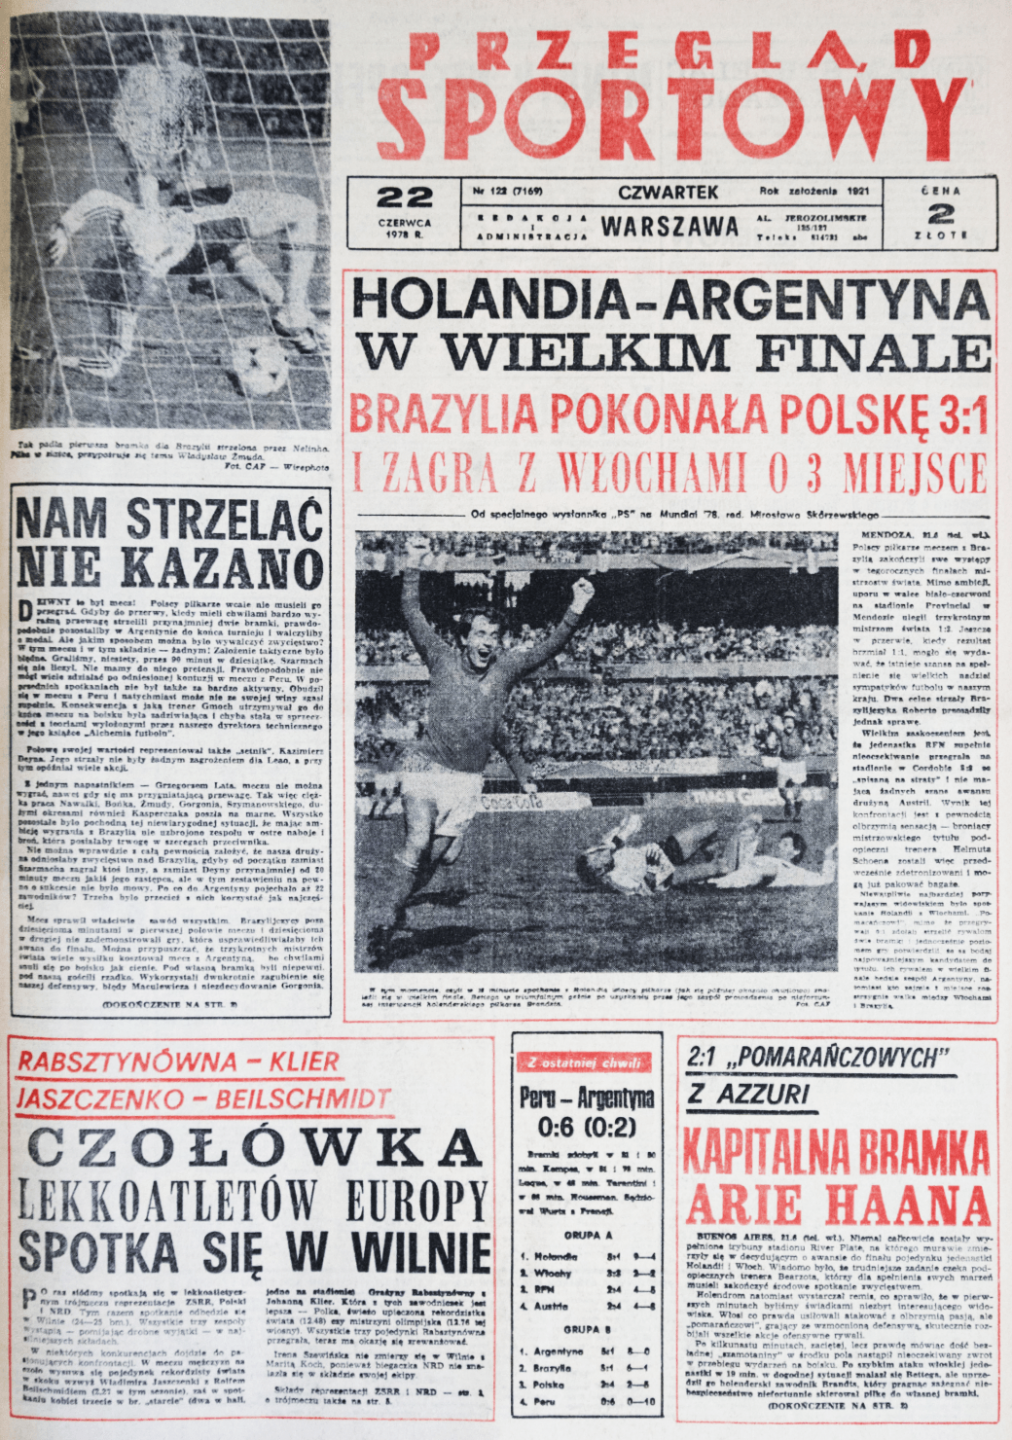 Okładka przeglądu sportowego po meczu Polska - Brazylia (21.06.1978)